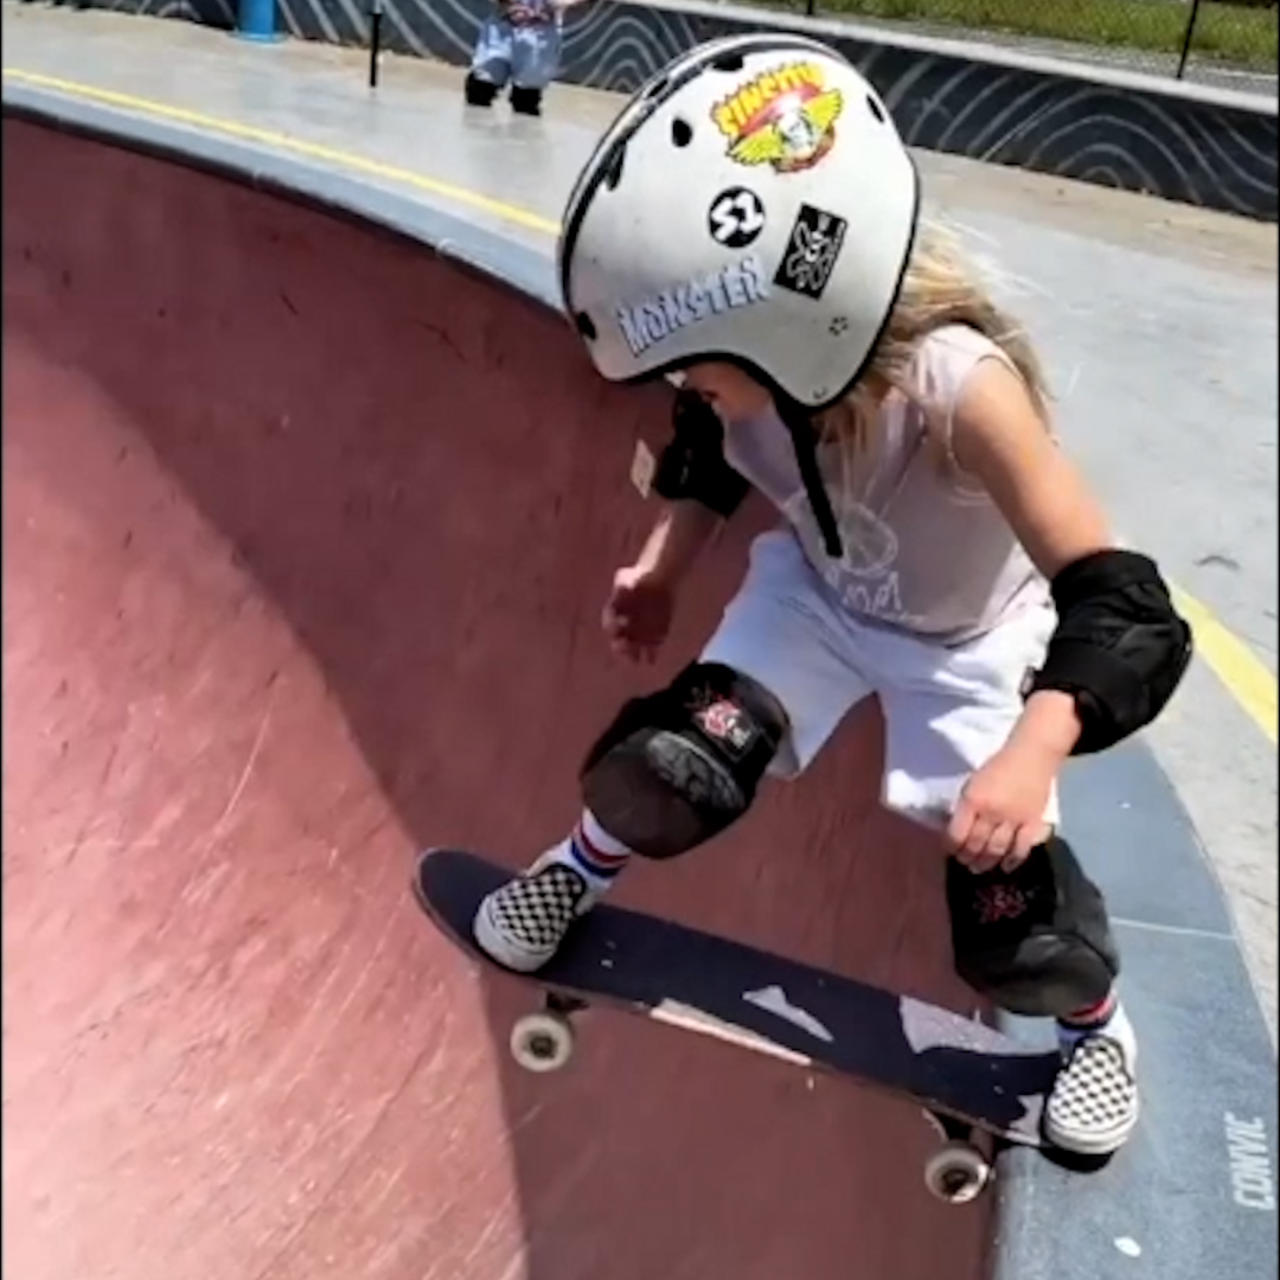 6-year-old Australian girl is world’s next skateboarding star